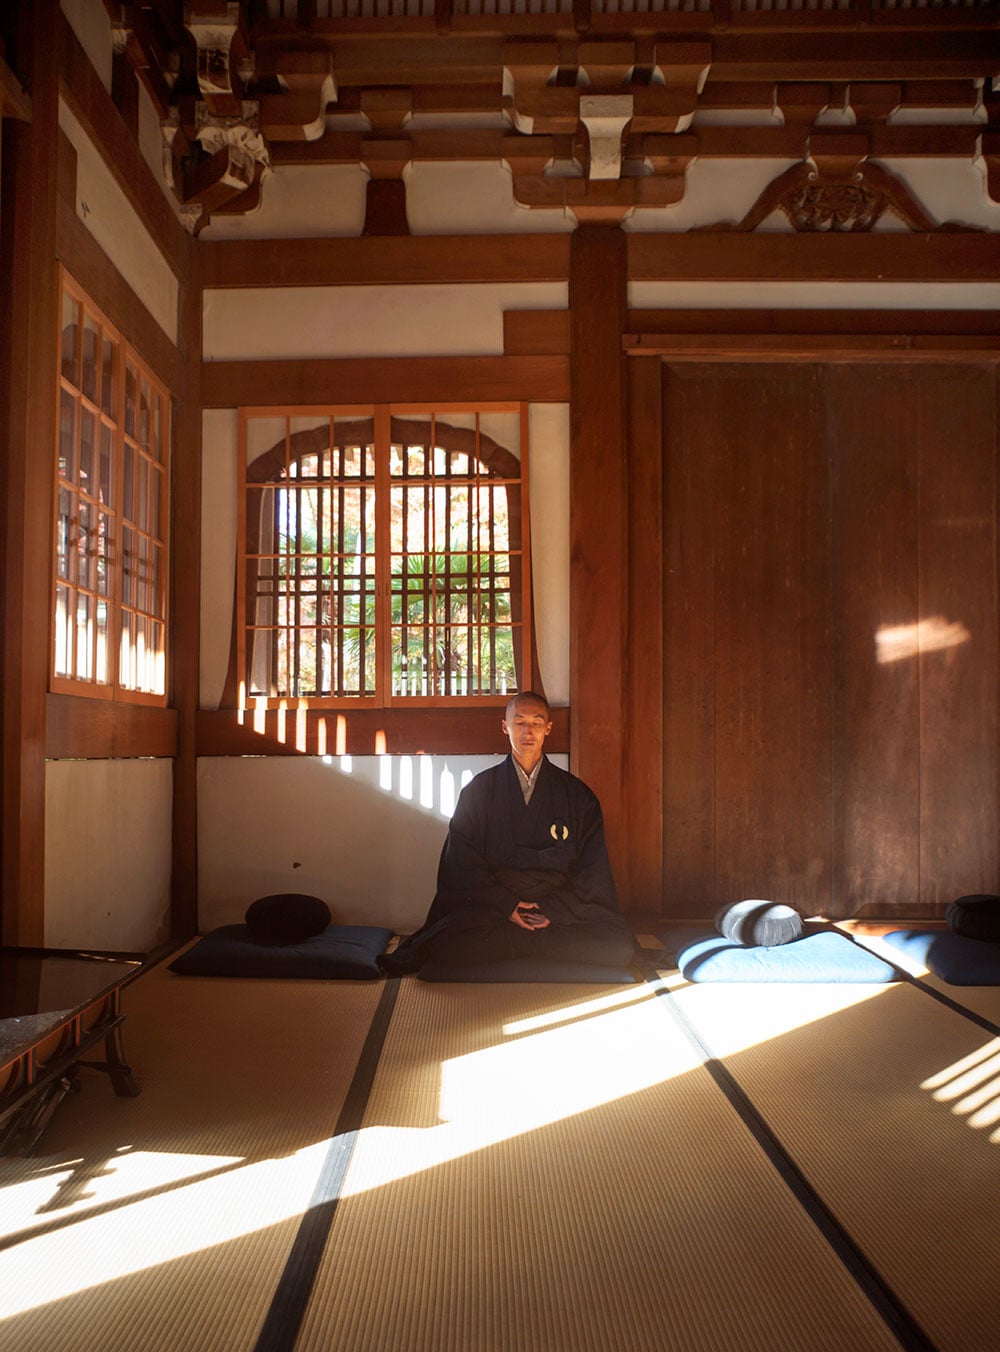 栖賢寺の観音堂と呼ばれる禅堂で坐禅を組む宗貫住職。冬は坐禅が終わる7時頃に朝の光が射し込む。清々しさもひとしおだ。